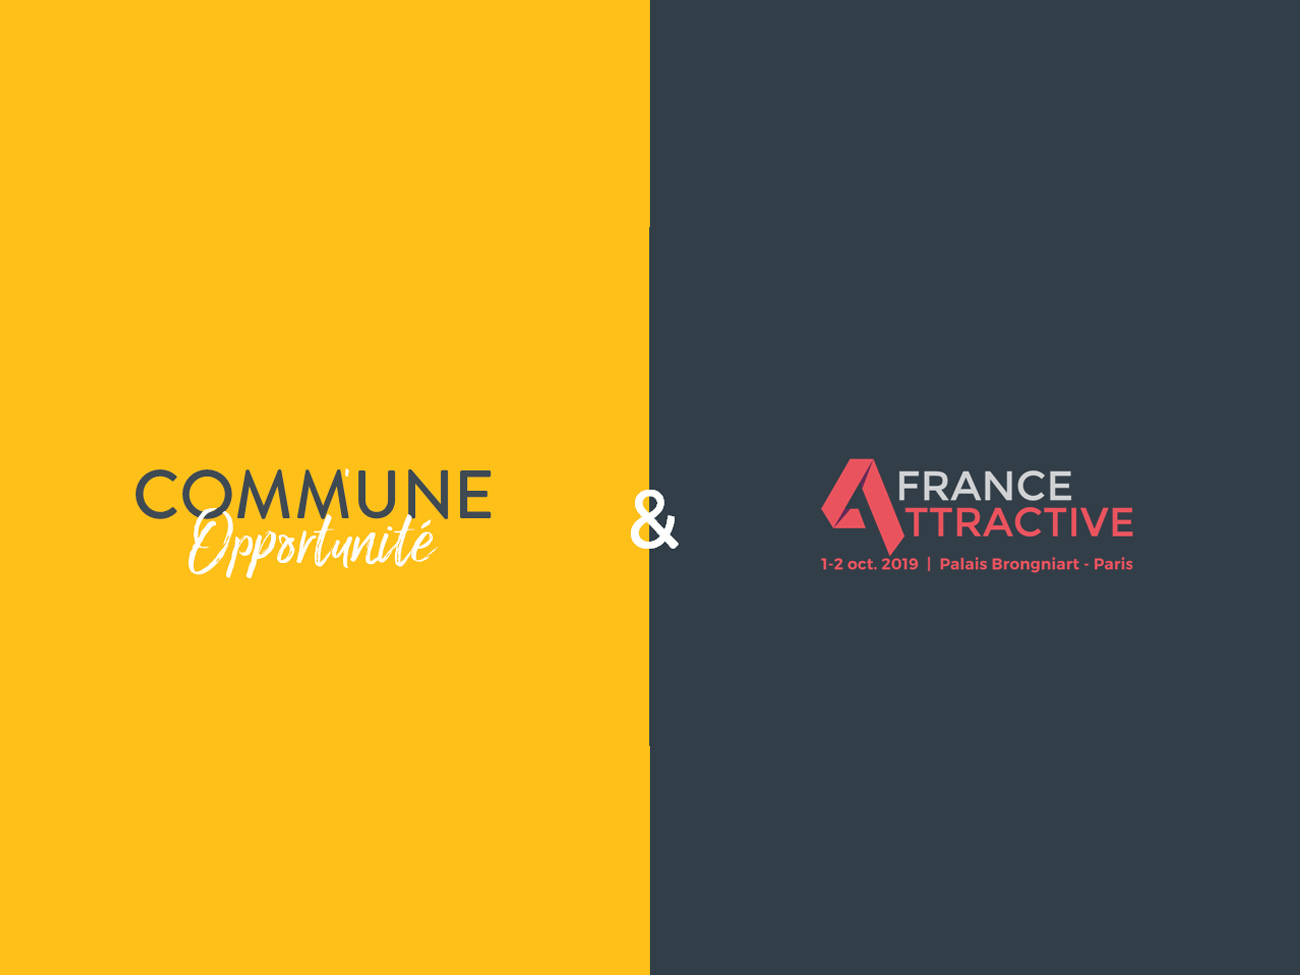 Partenariat France Attractive x Comm'une opportunité